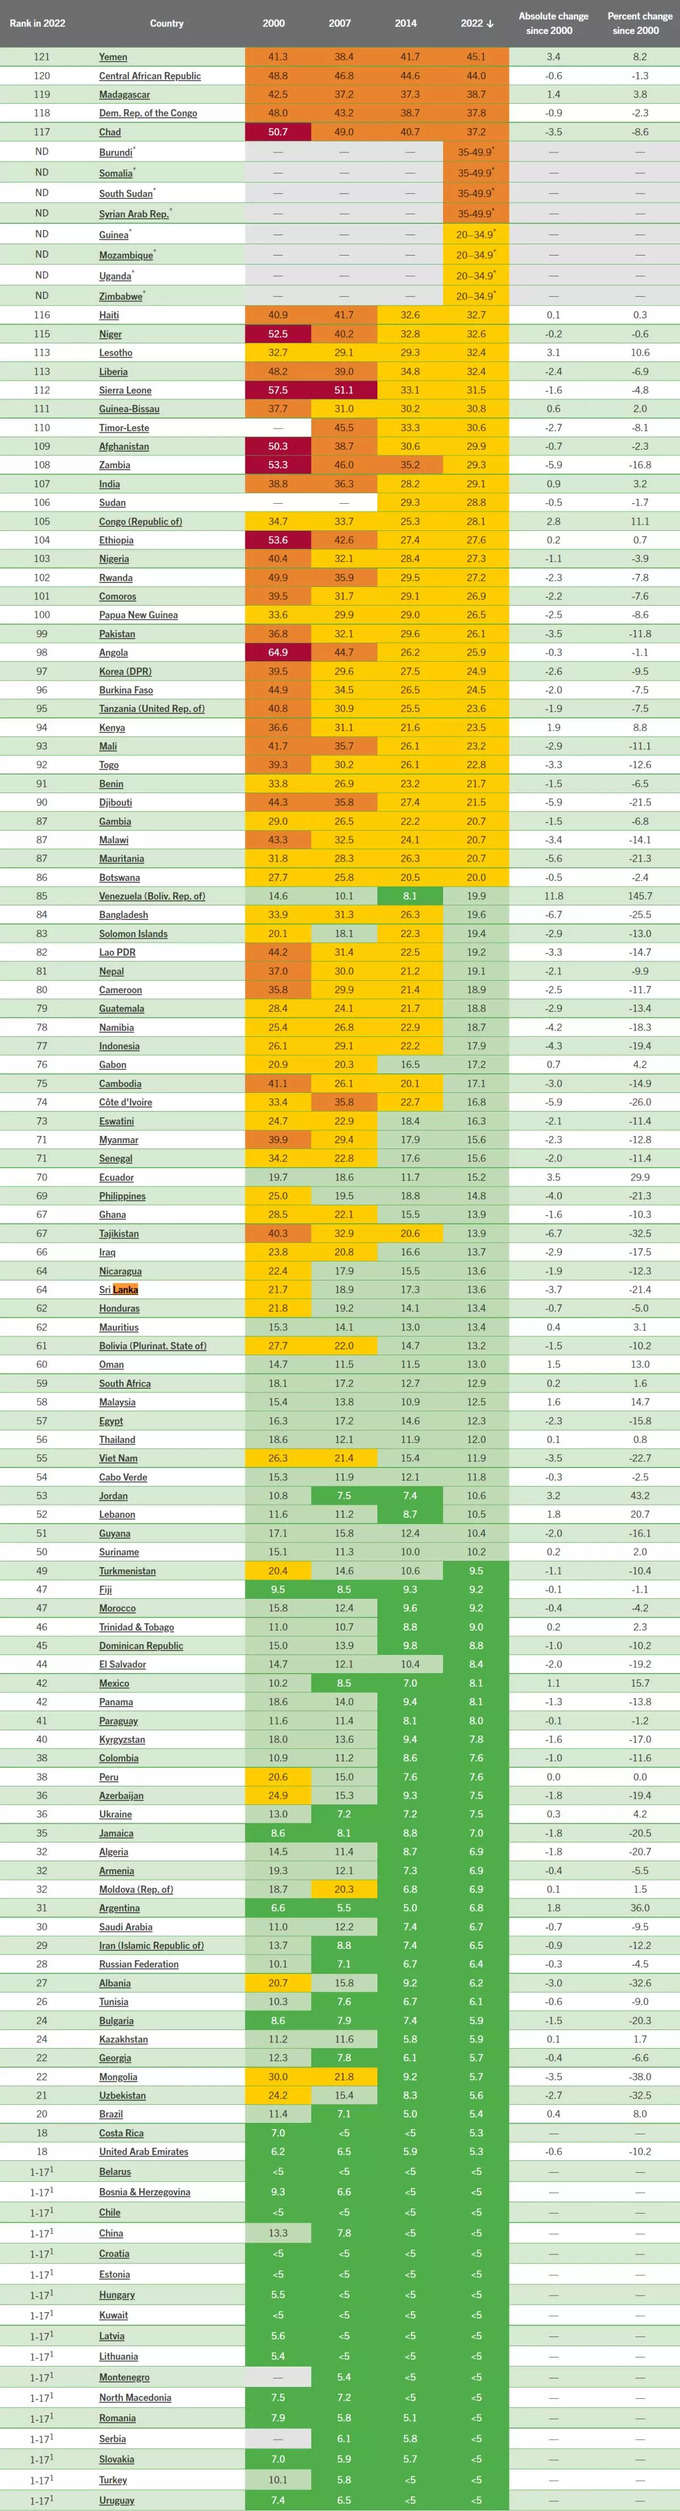 Hunger index 2022 Full List